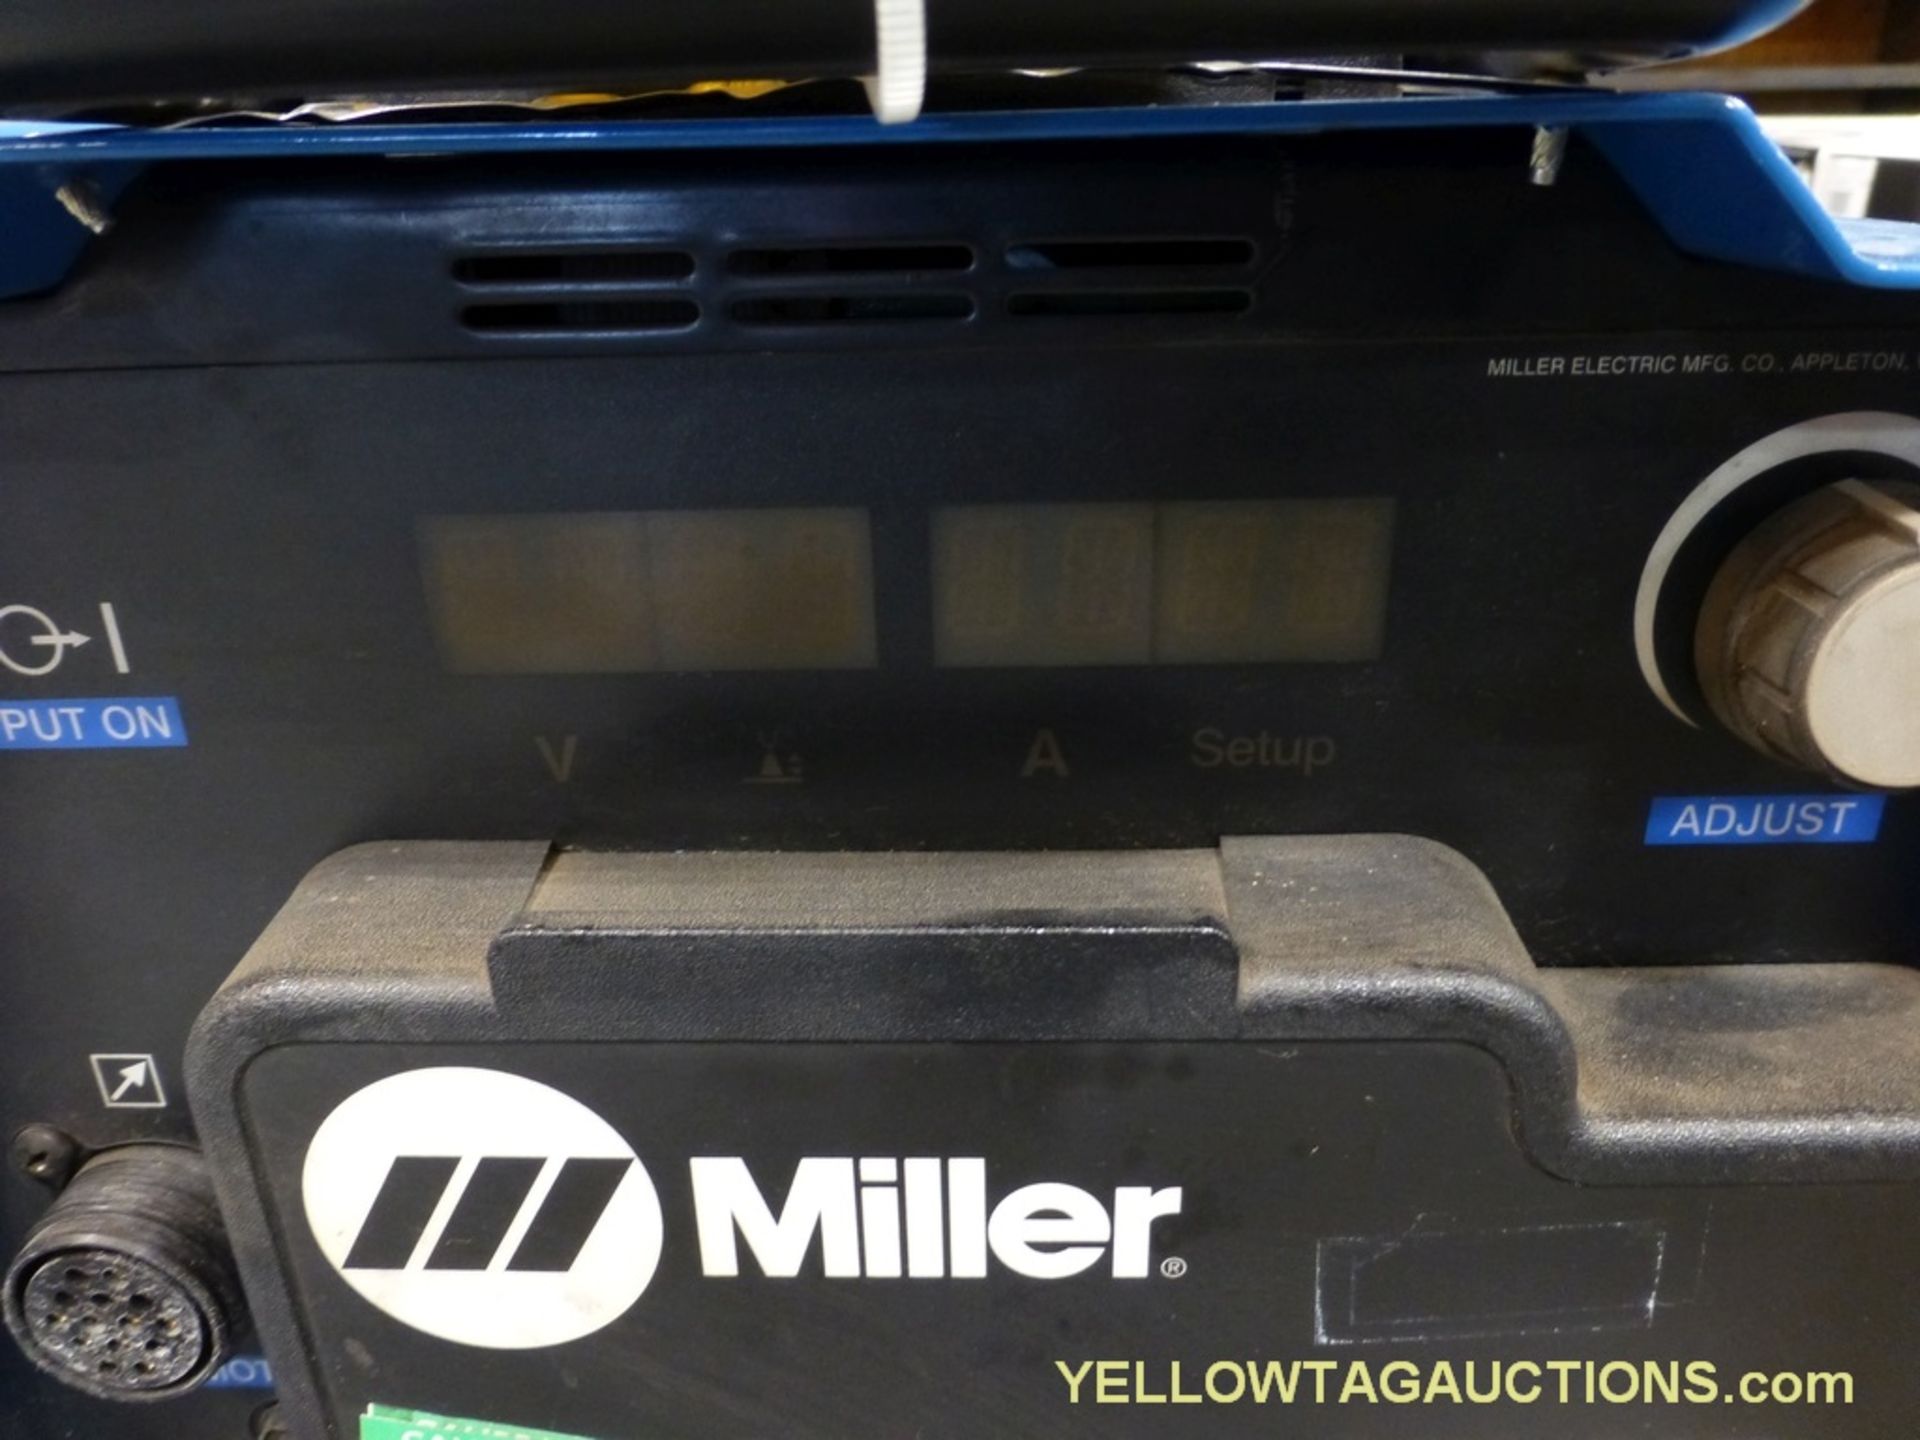 Miller Invision Auto Lite 350 MPA | Model No. 907397; 11.2/13.6A; 208/575V; 50/60Hz - Image 3 of 8